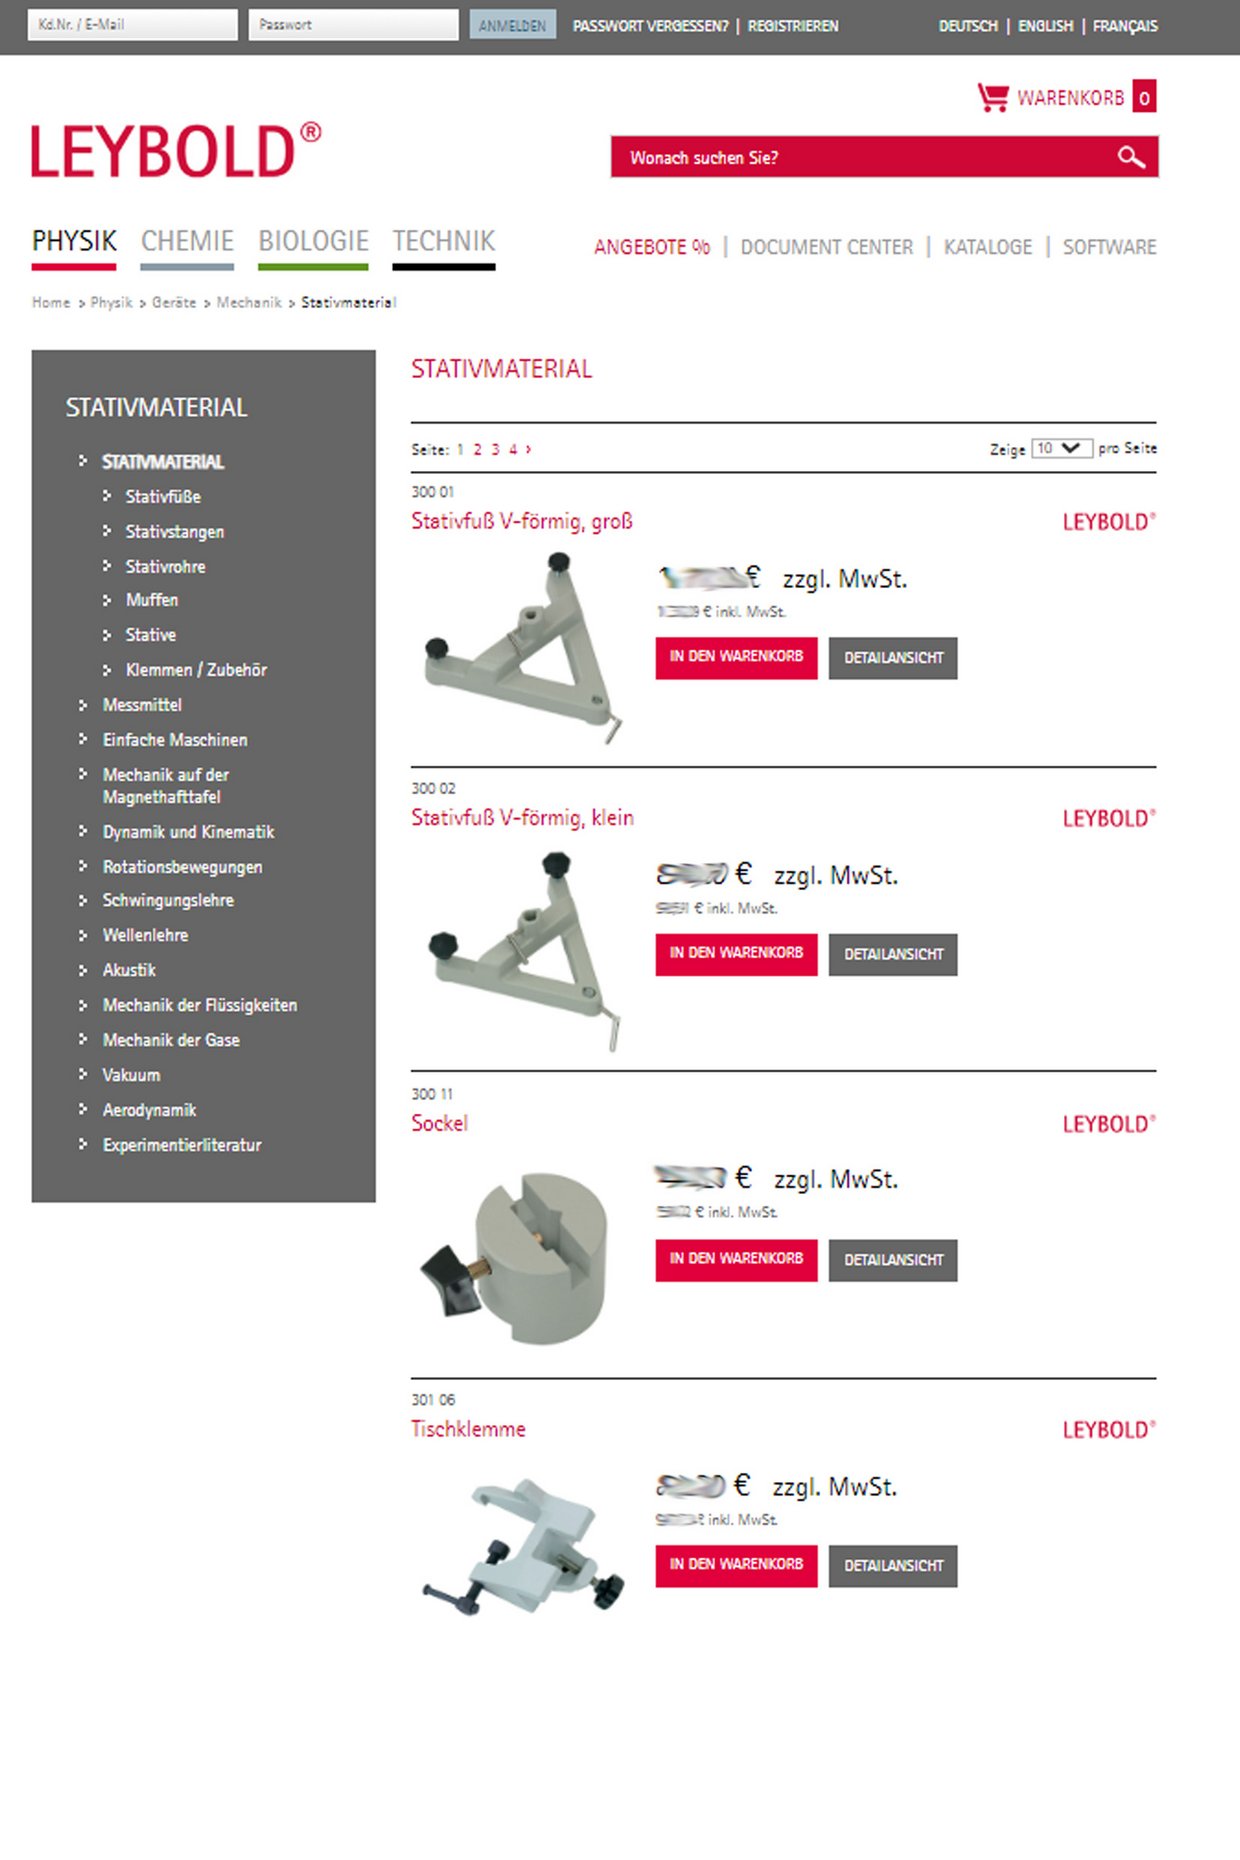 In unserem Webshop erhalten Sie jederzeit Ersatz- und Ergänzungsteile für Ihre LEYBOLD-Ausstattung, auch über Jahre hinweg. www.leybold-shop.de